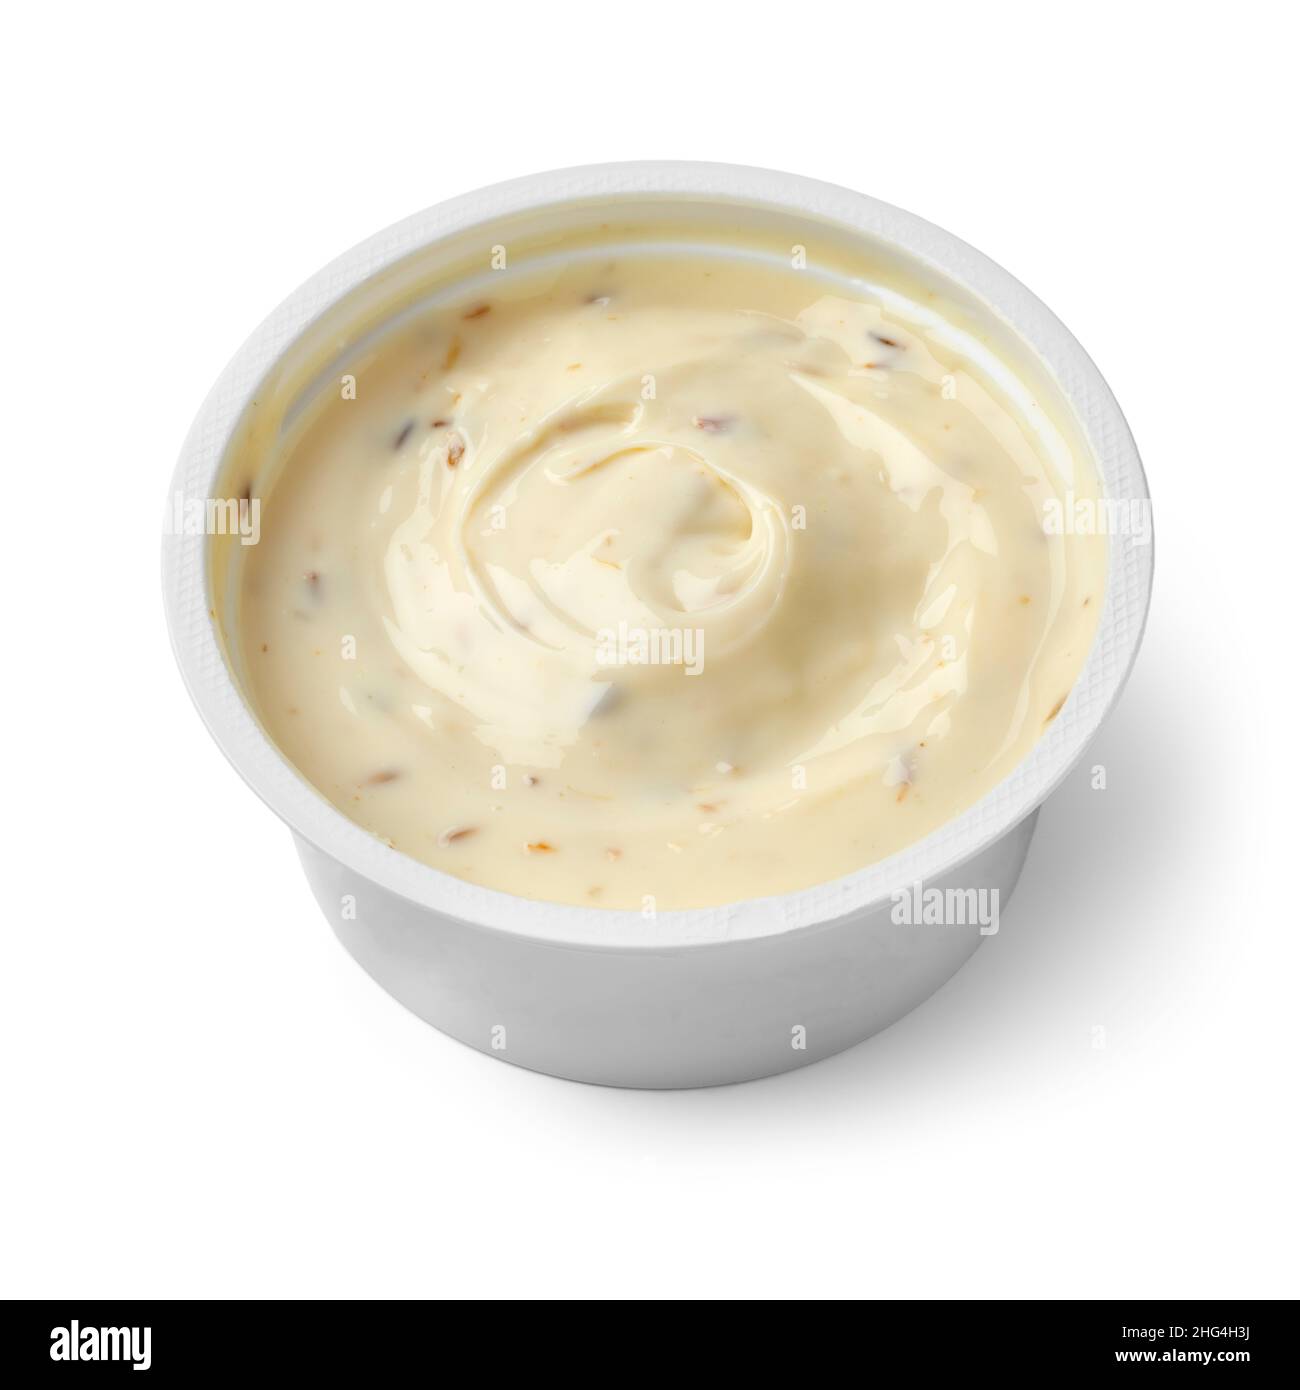 Plato de plástico con queso crema de cabras bajas en grasa y comino cerca aislado sobre fondo blanco Foto de stock